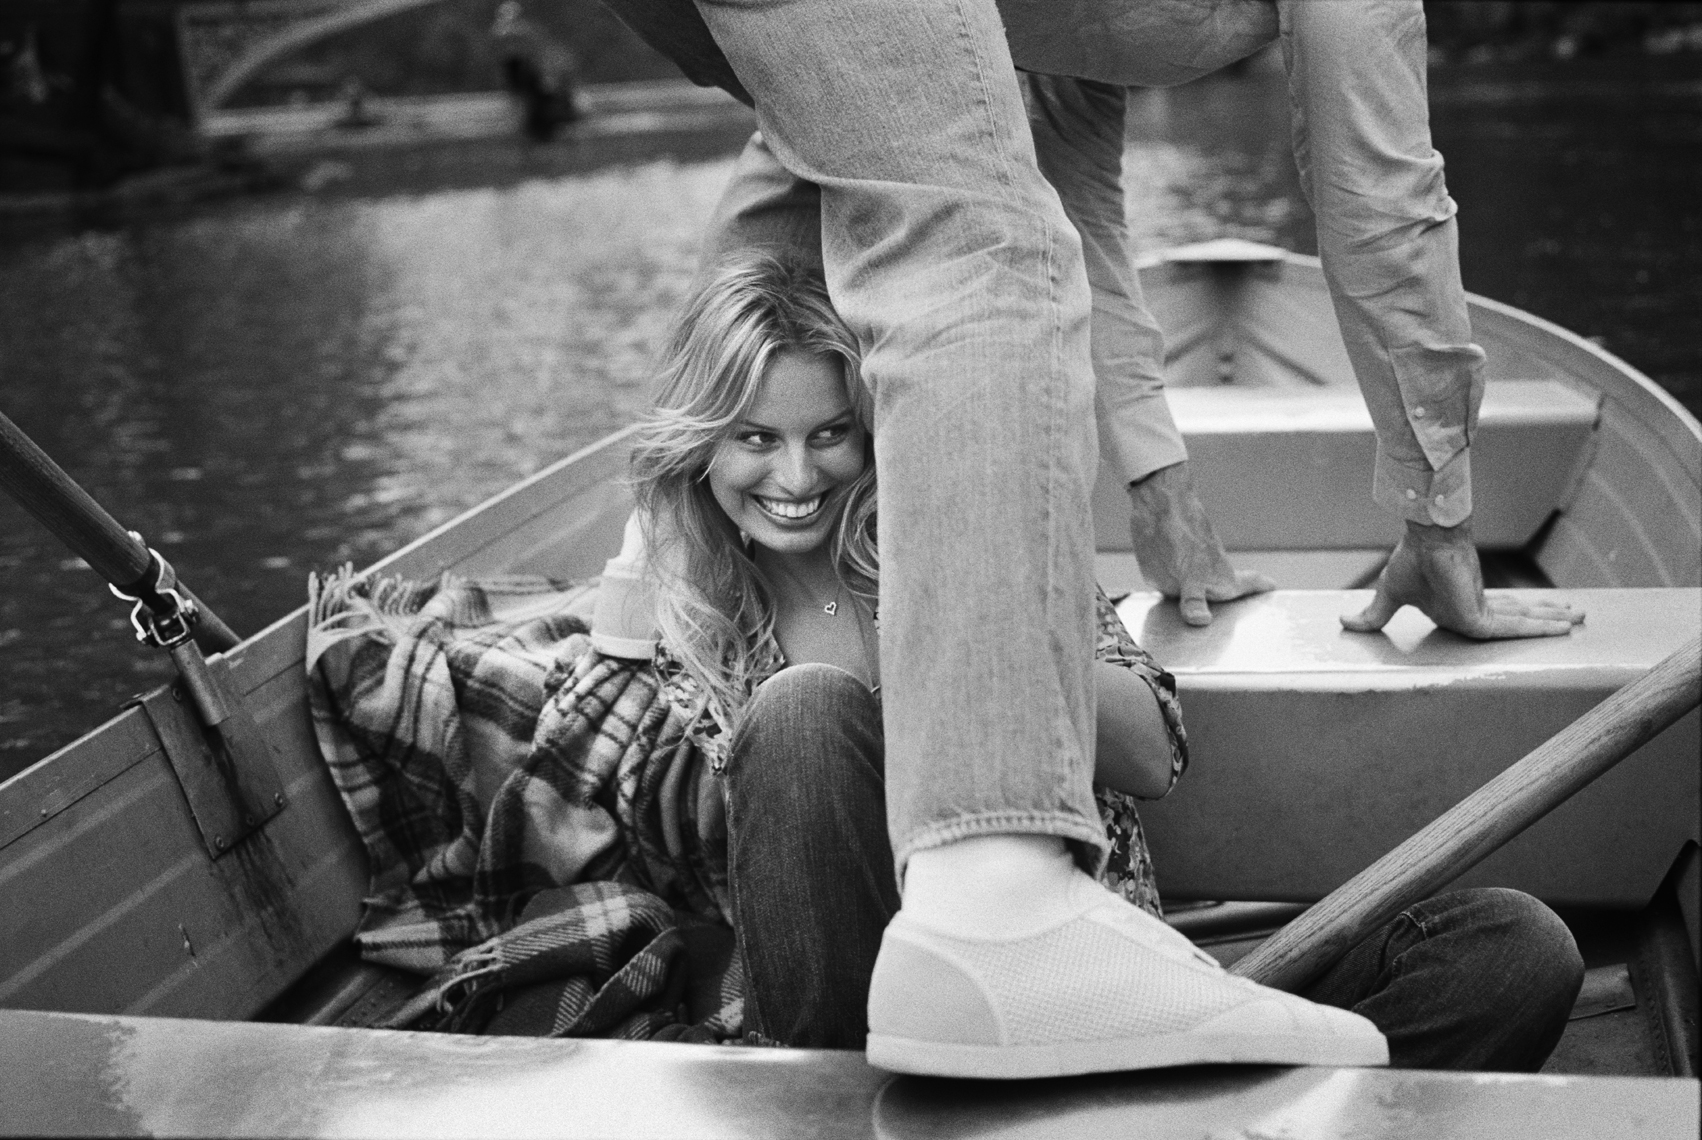 wKlitschko_Kurkova_Smiling_Boat